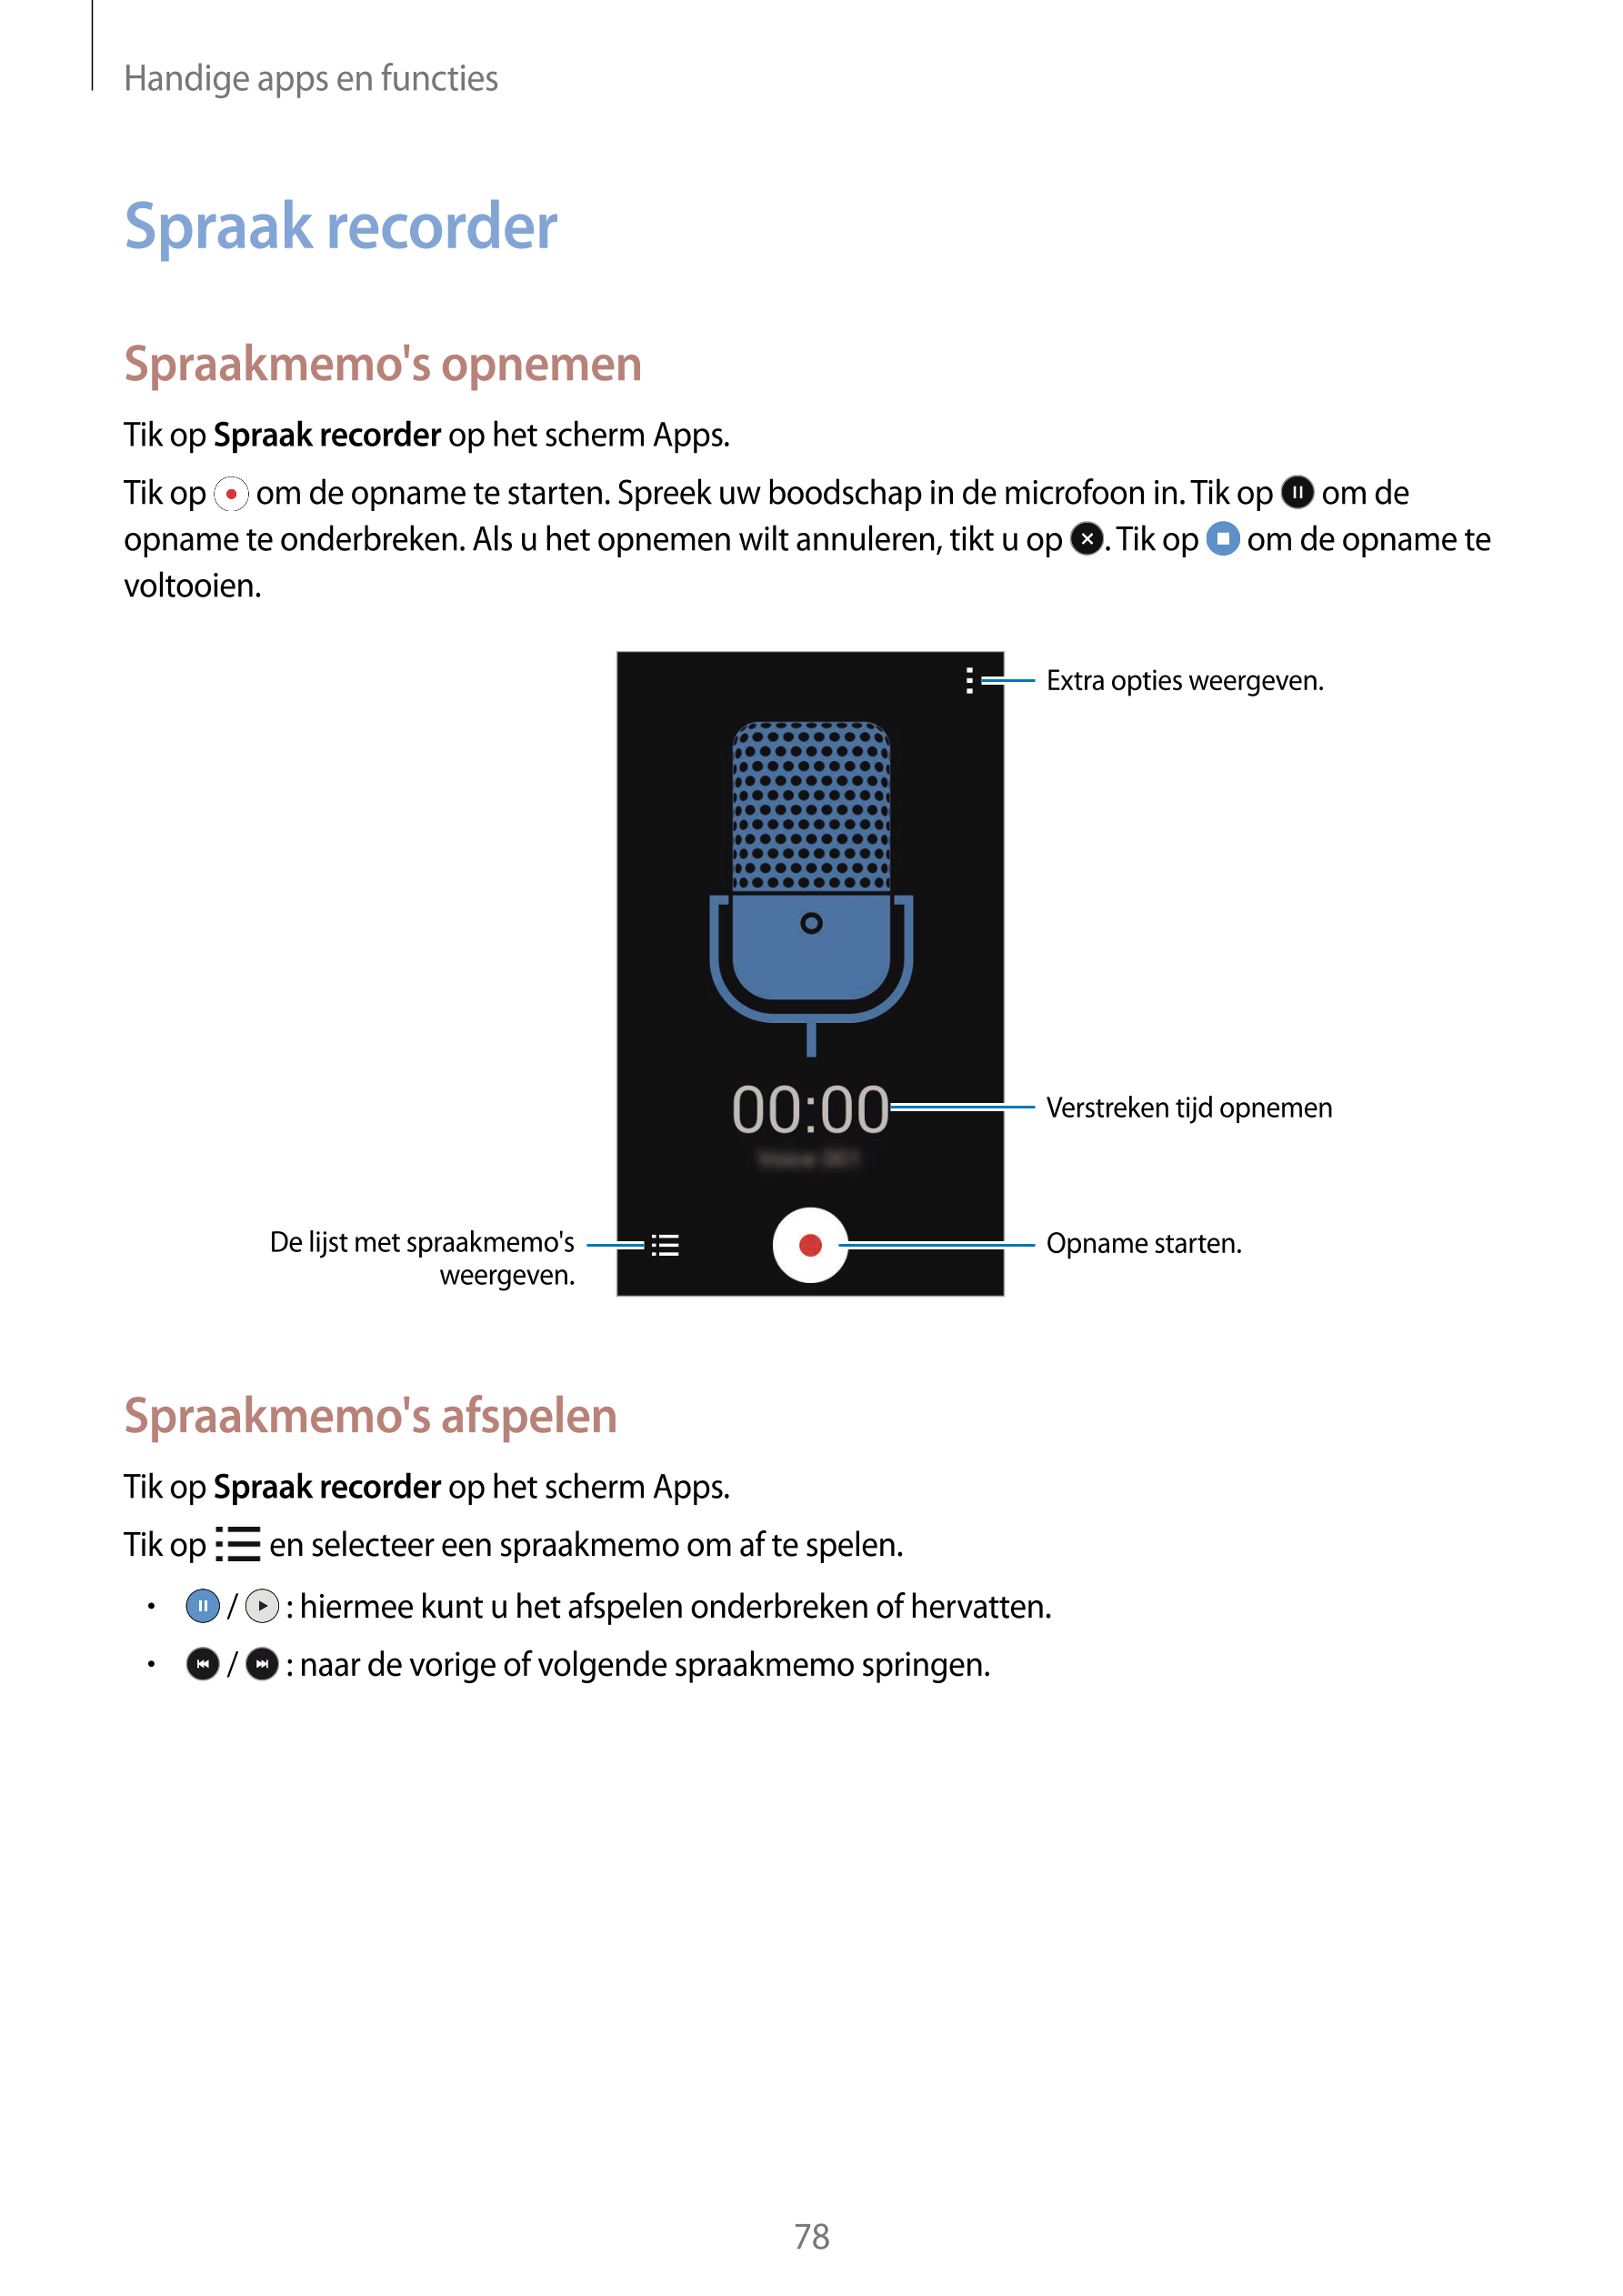 Handige apps en functies
Spraak recorder
Spraakmemo's opnemen
Tik op  Spraak recorder op het scherm Apps.
Tik op   om de opname 